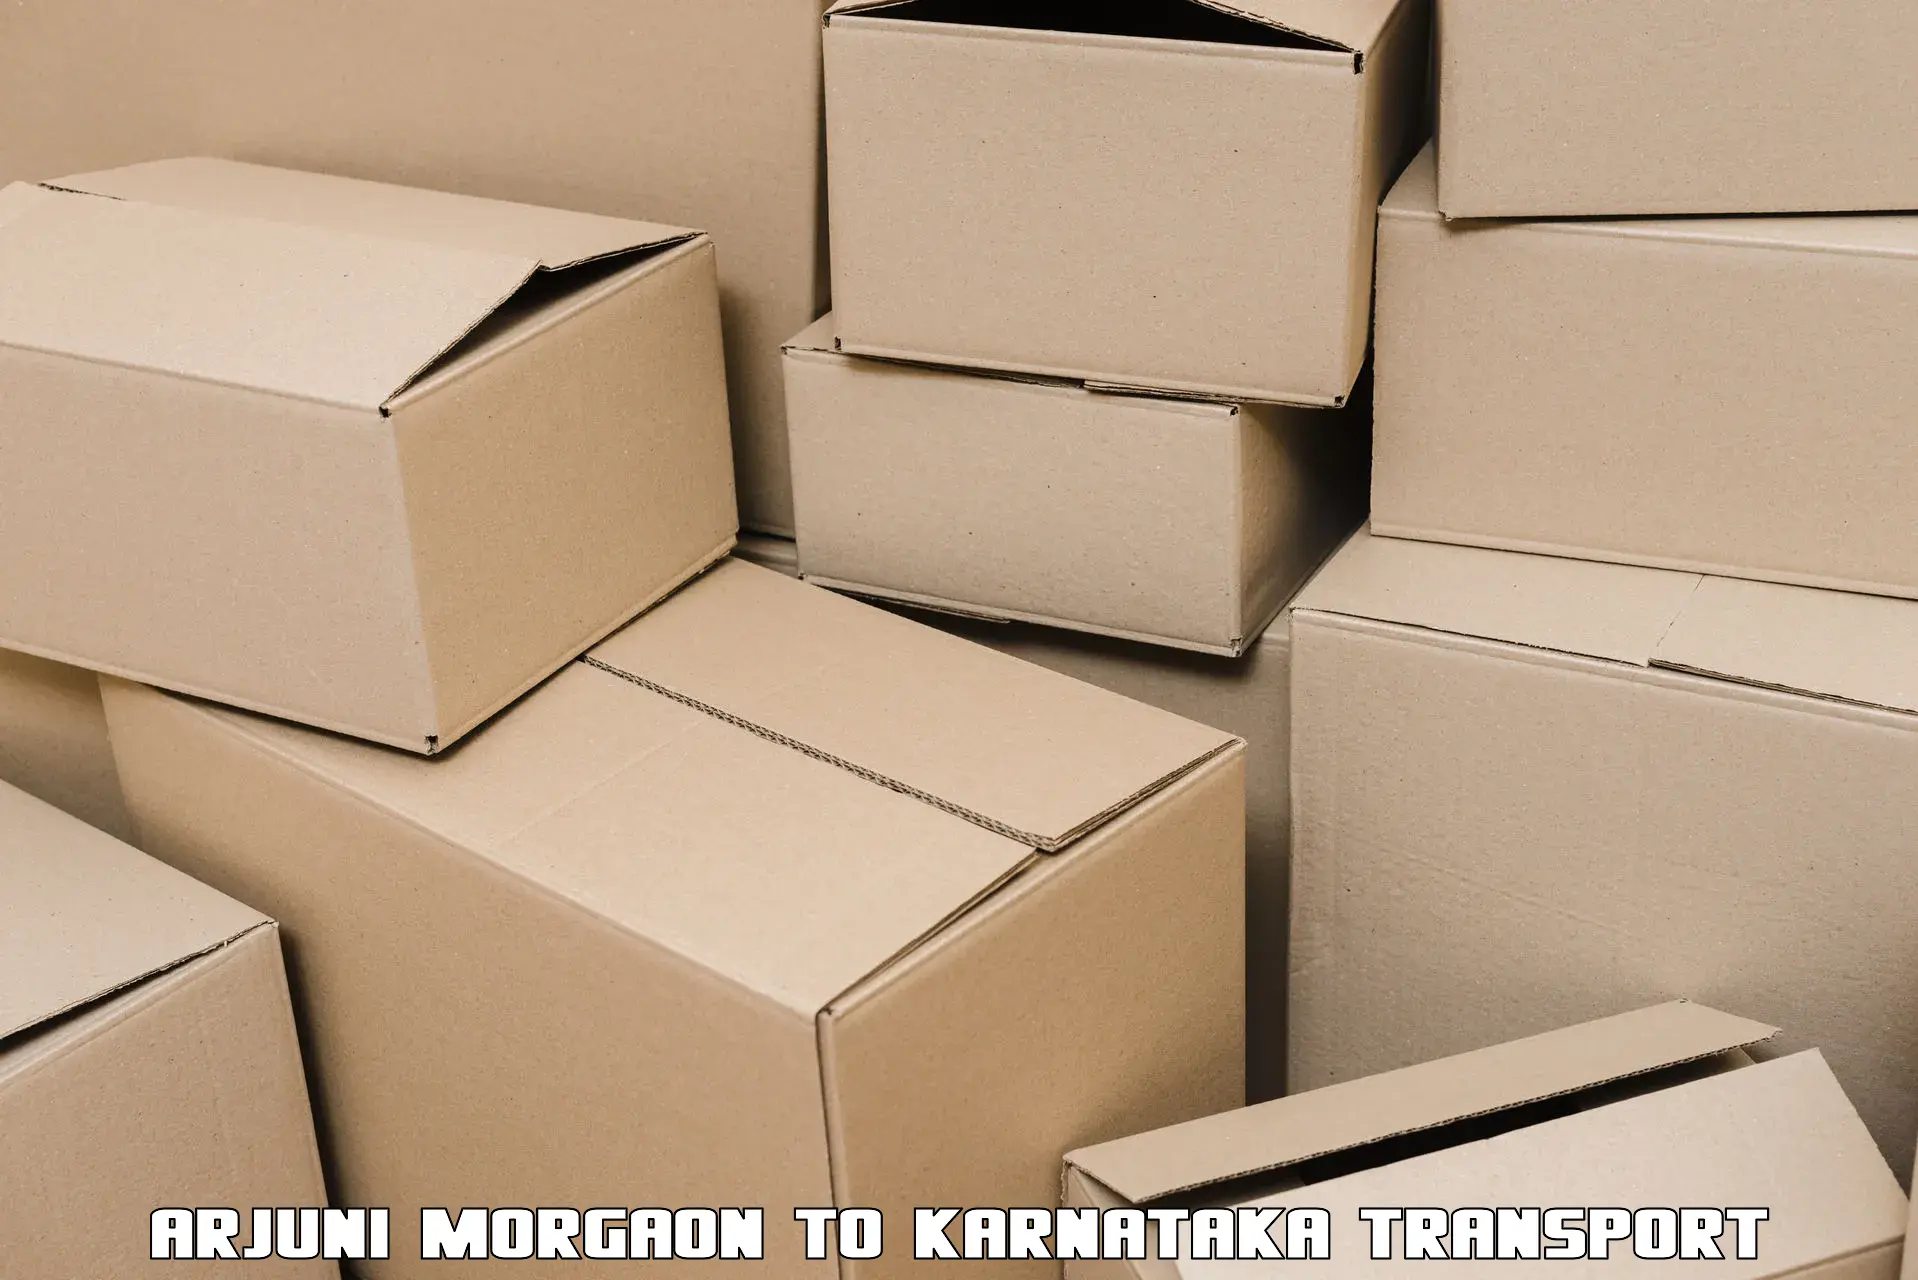 Shipping partner Arjuni Morgaon to Kunigal